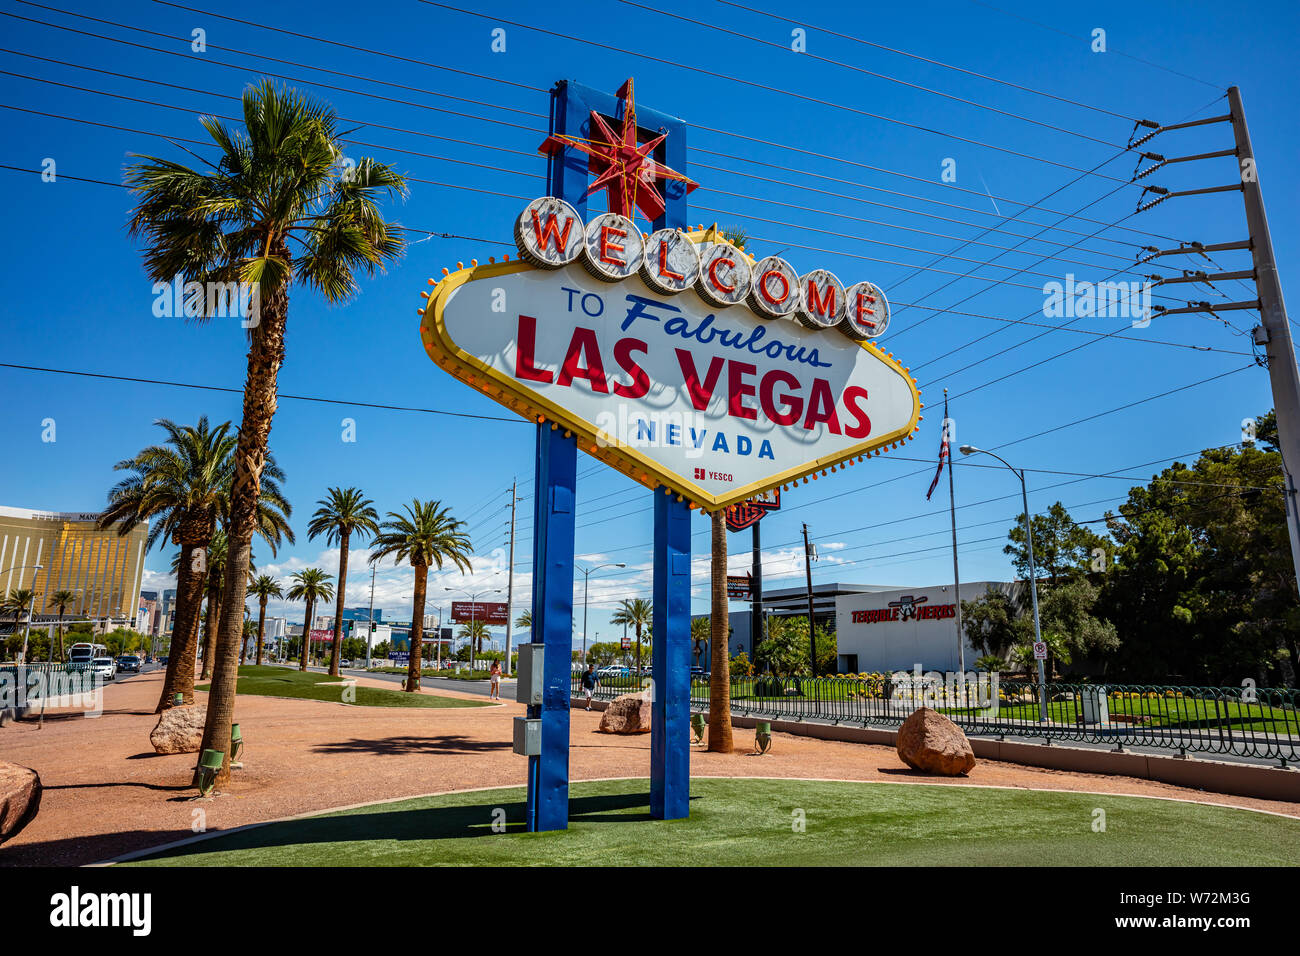 Las Vegas, Nevada, USA. 29 mai, 2019. Panneau Welcome to Fabulous Las Vegas. Journée de printemps ensoleillée, ciel bleu Banque D'Images